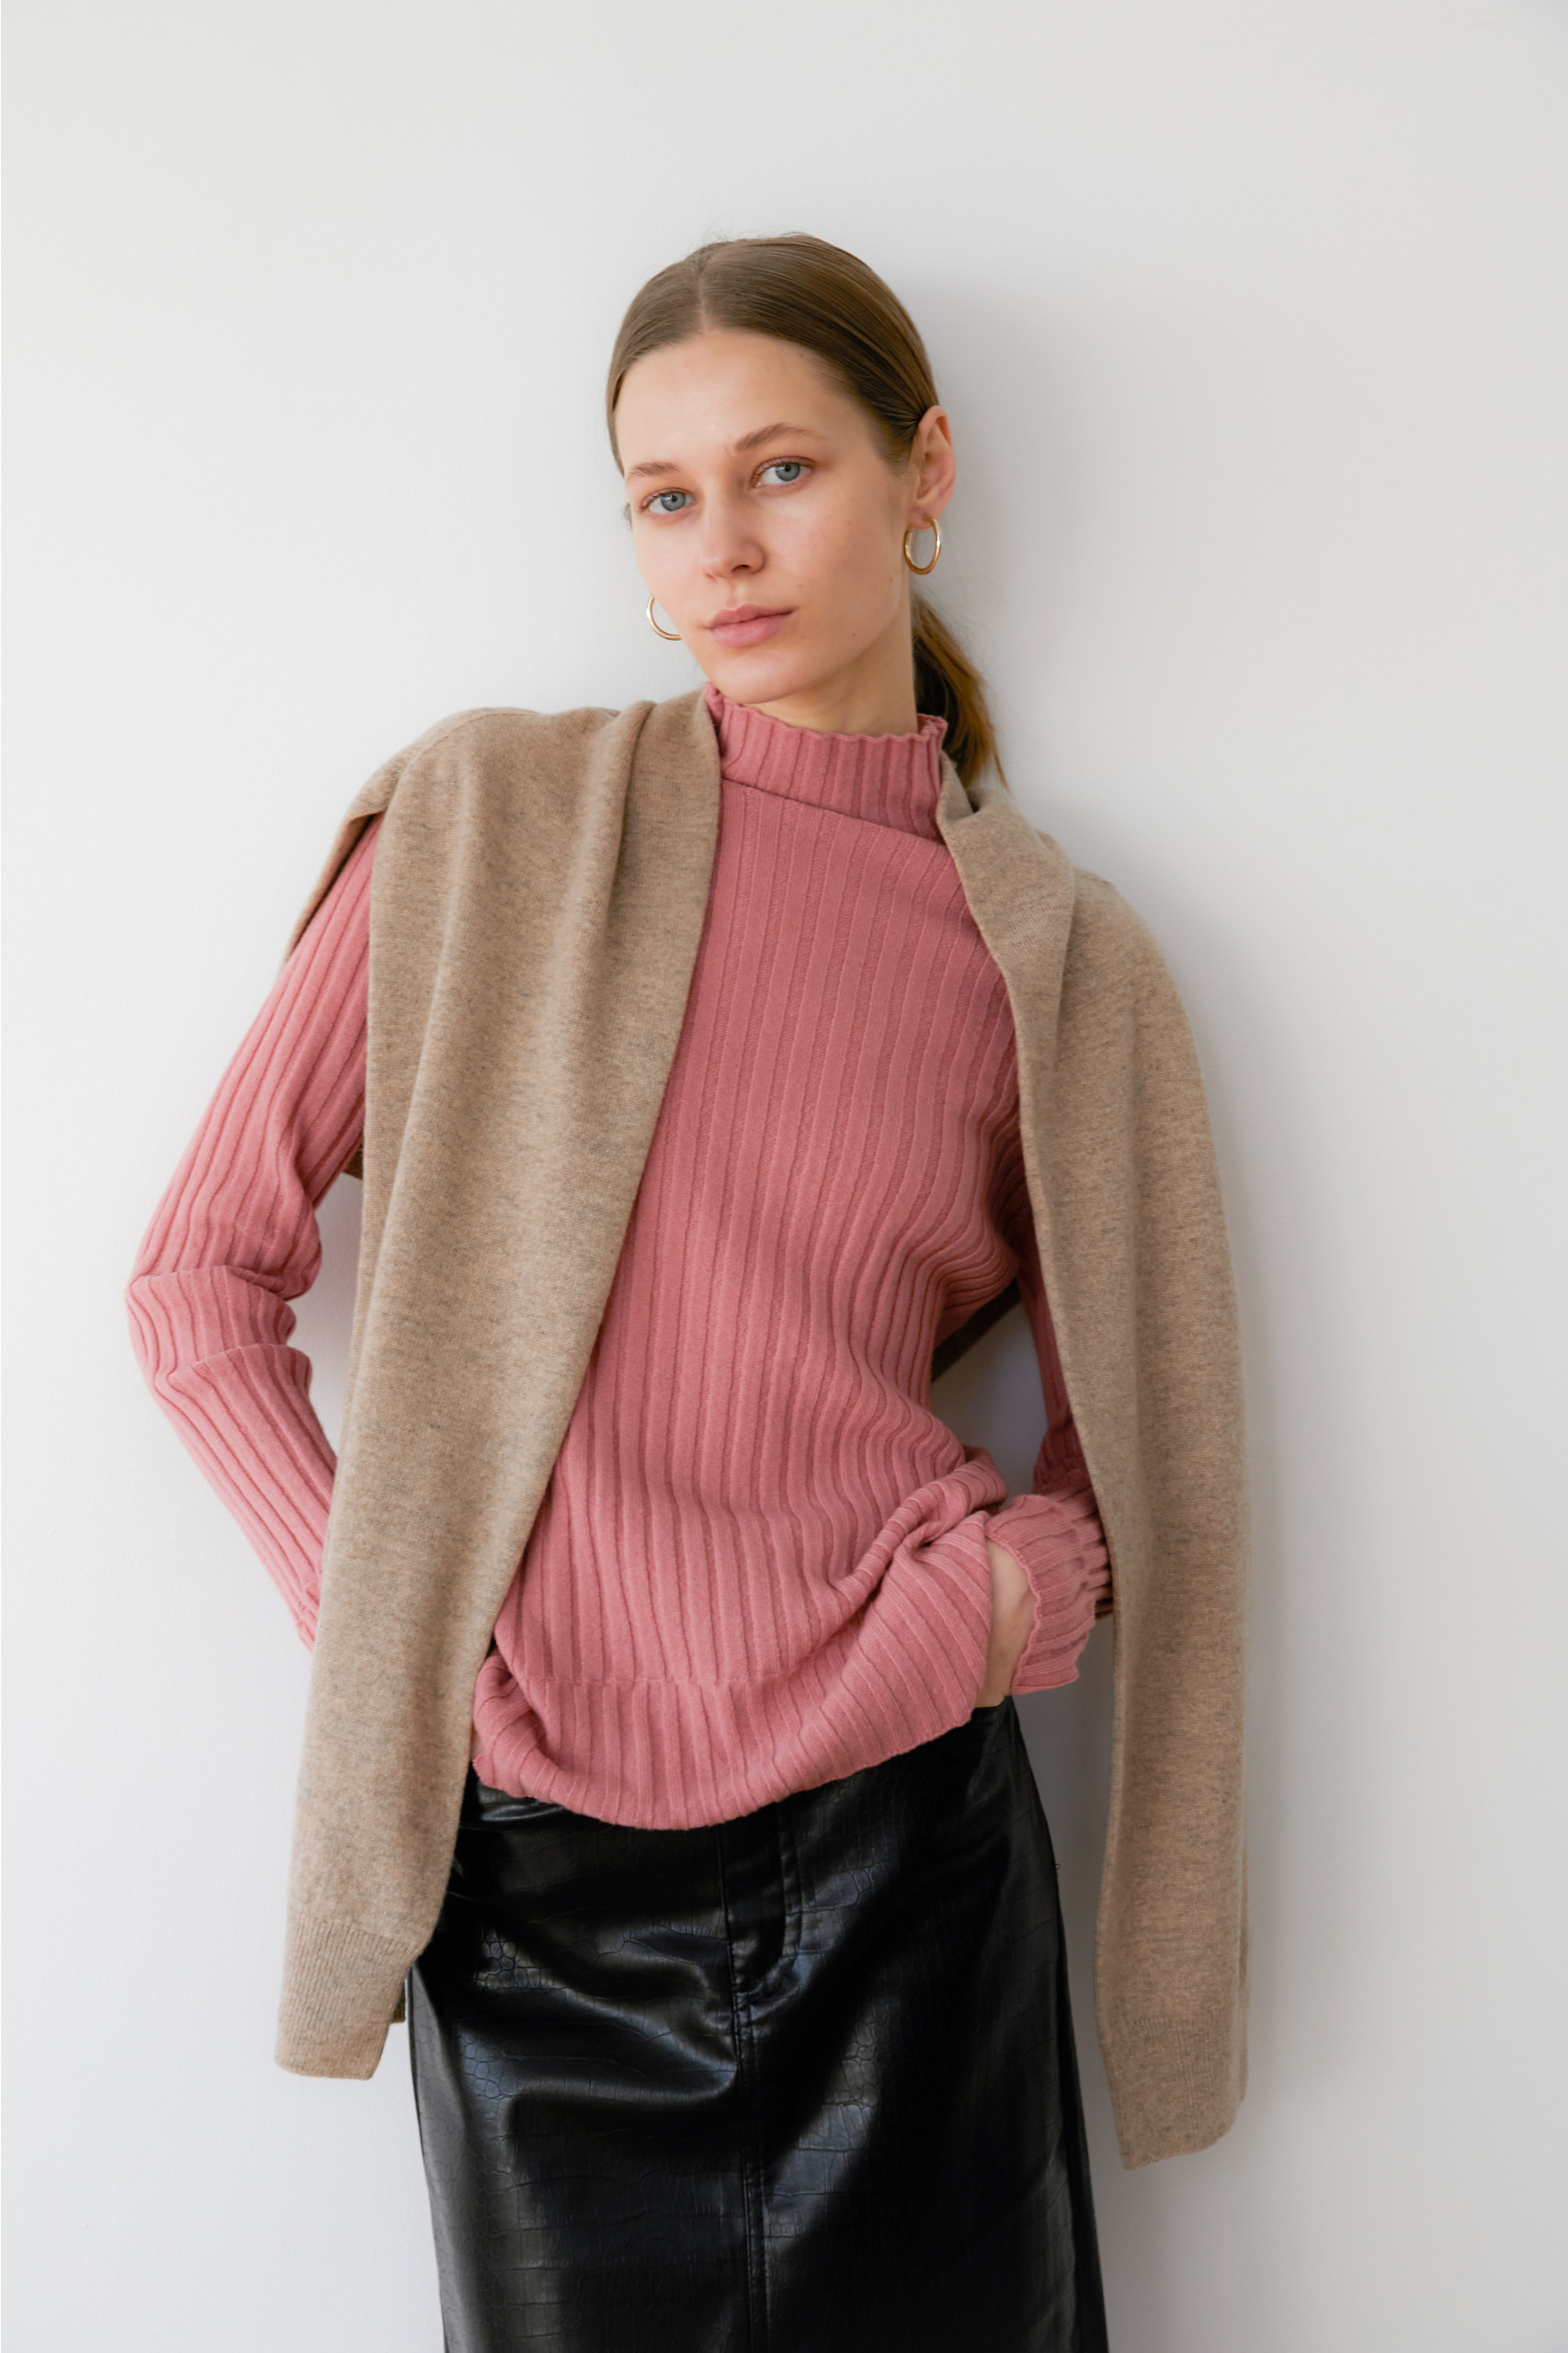 프리미엄 캐시미어 100 골지 스웨터 [Pure cashmere100 ribbed soft-touch sweater by whole-garment knitting - Tosca Pink]